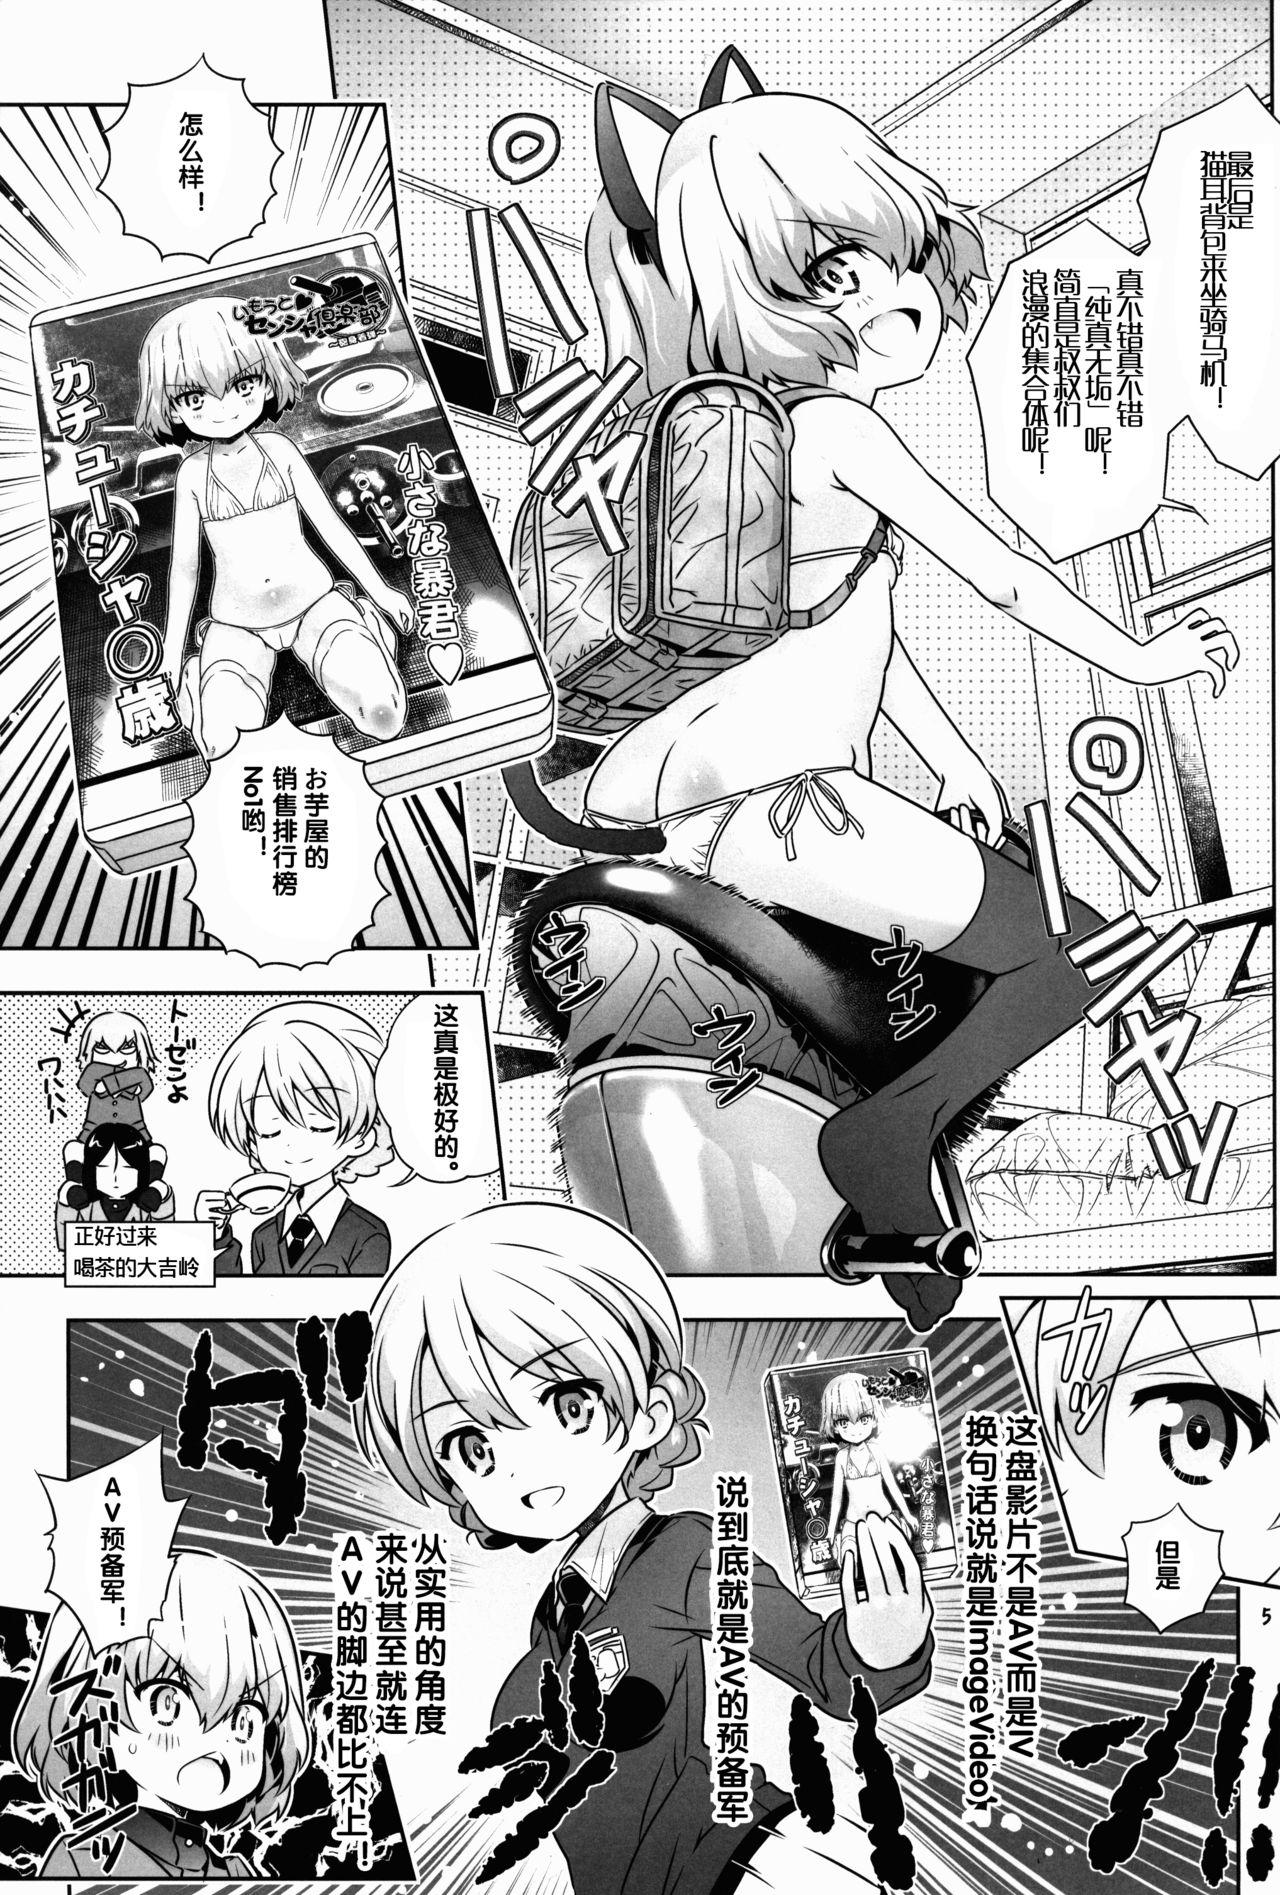 Penetration "AV Shutsuen, Ganbarimasu!?" Tsugi wa Enkou desu!! - Girls und panzer Camgirl - Page 5